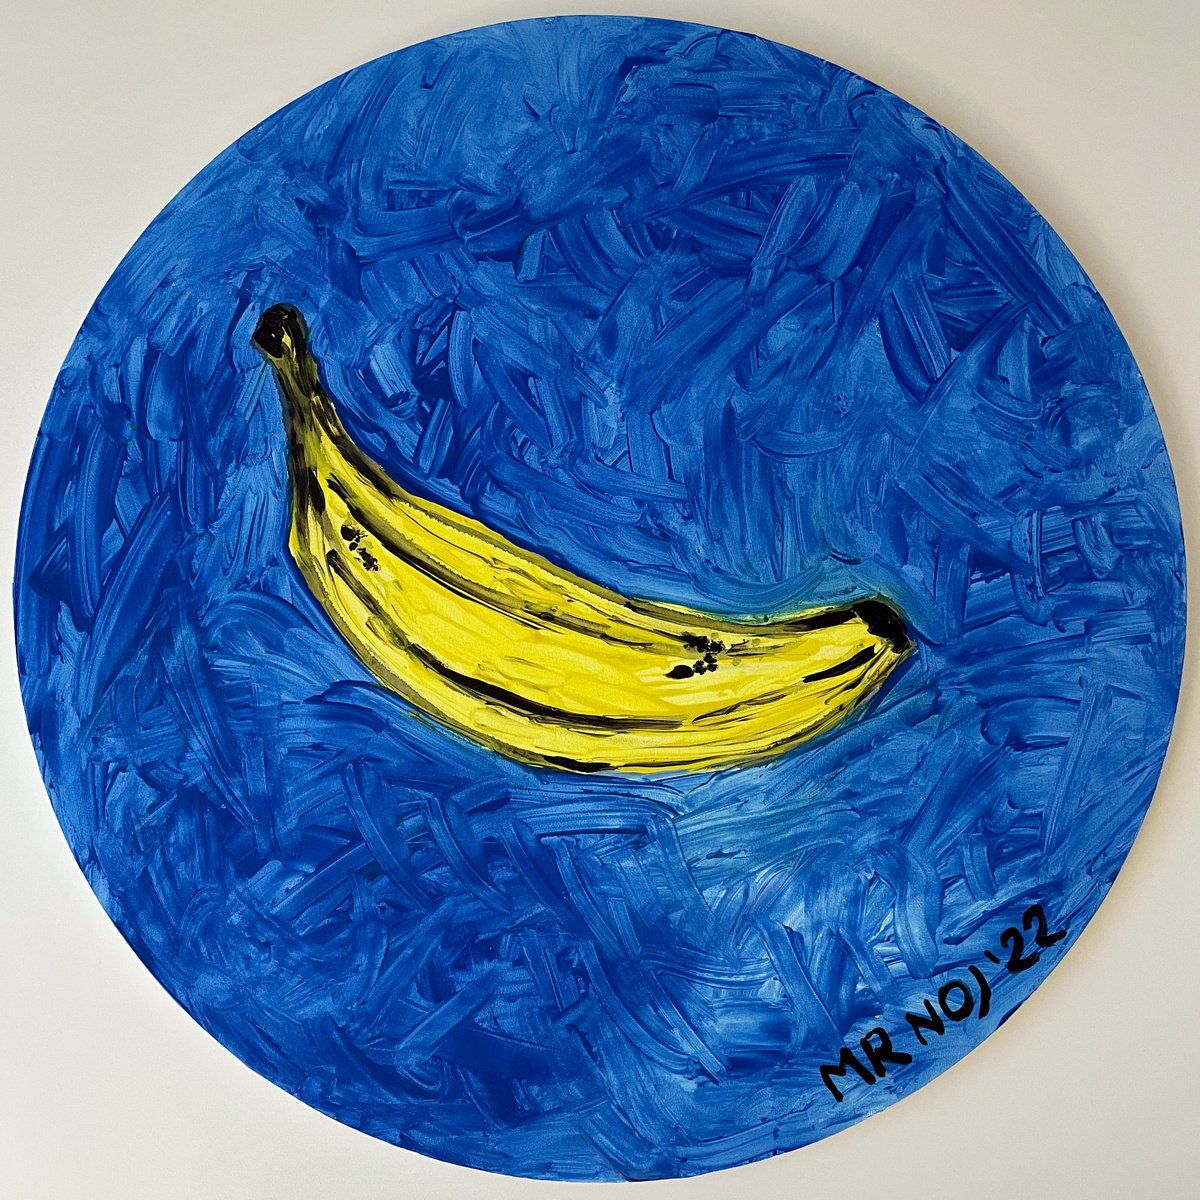 Banana by Mattia Paoli